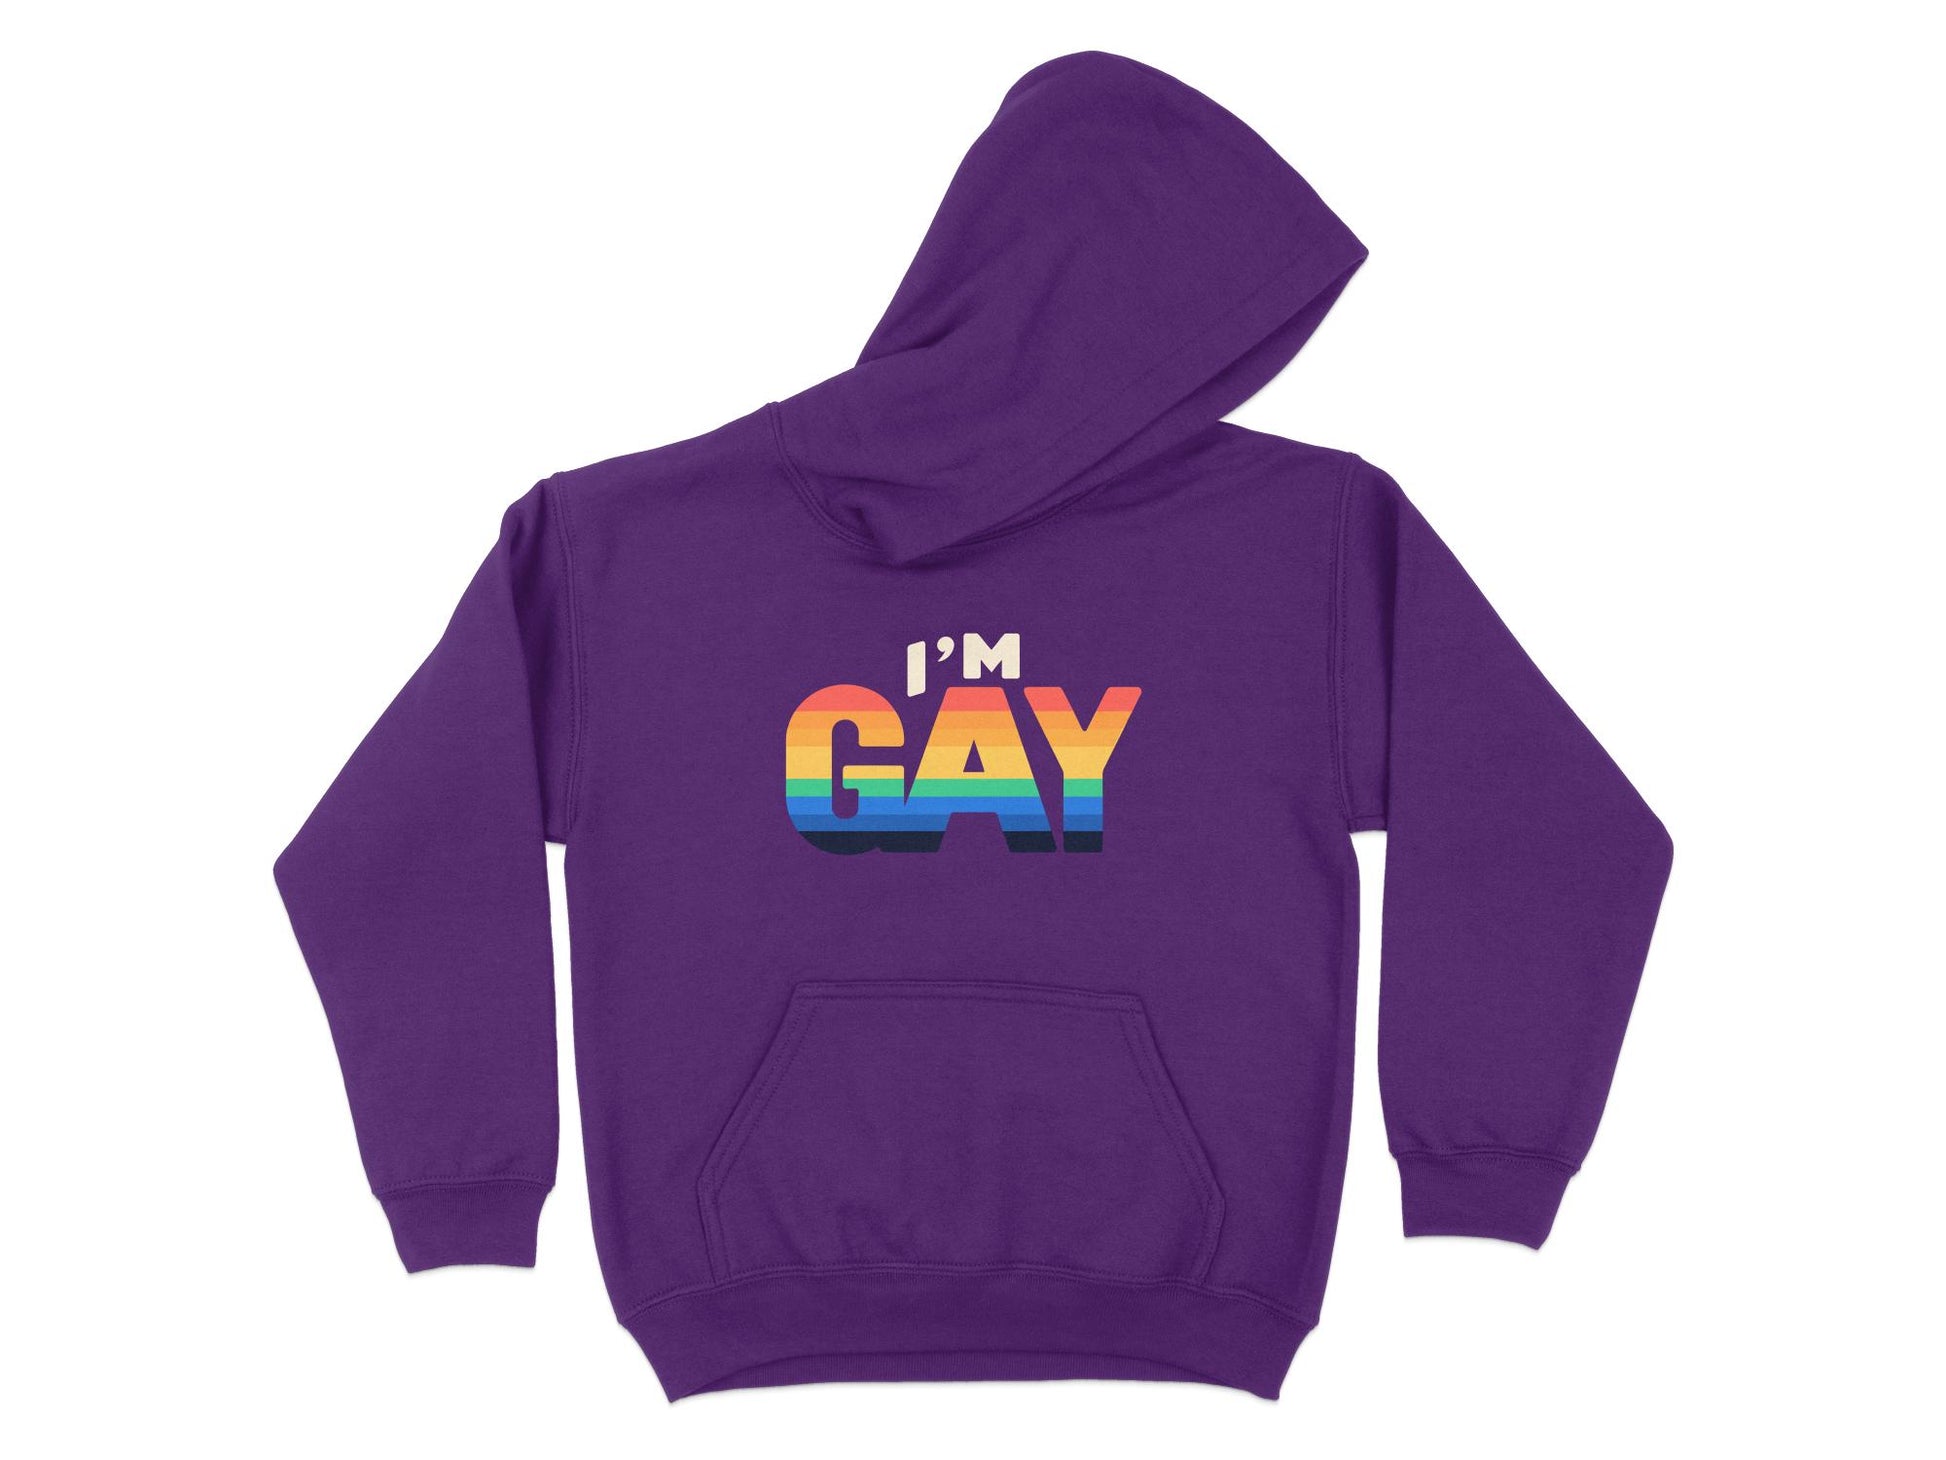 I'm Gay Hoodie, purple